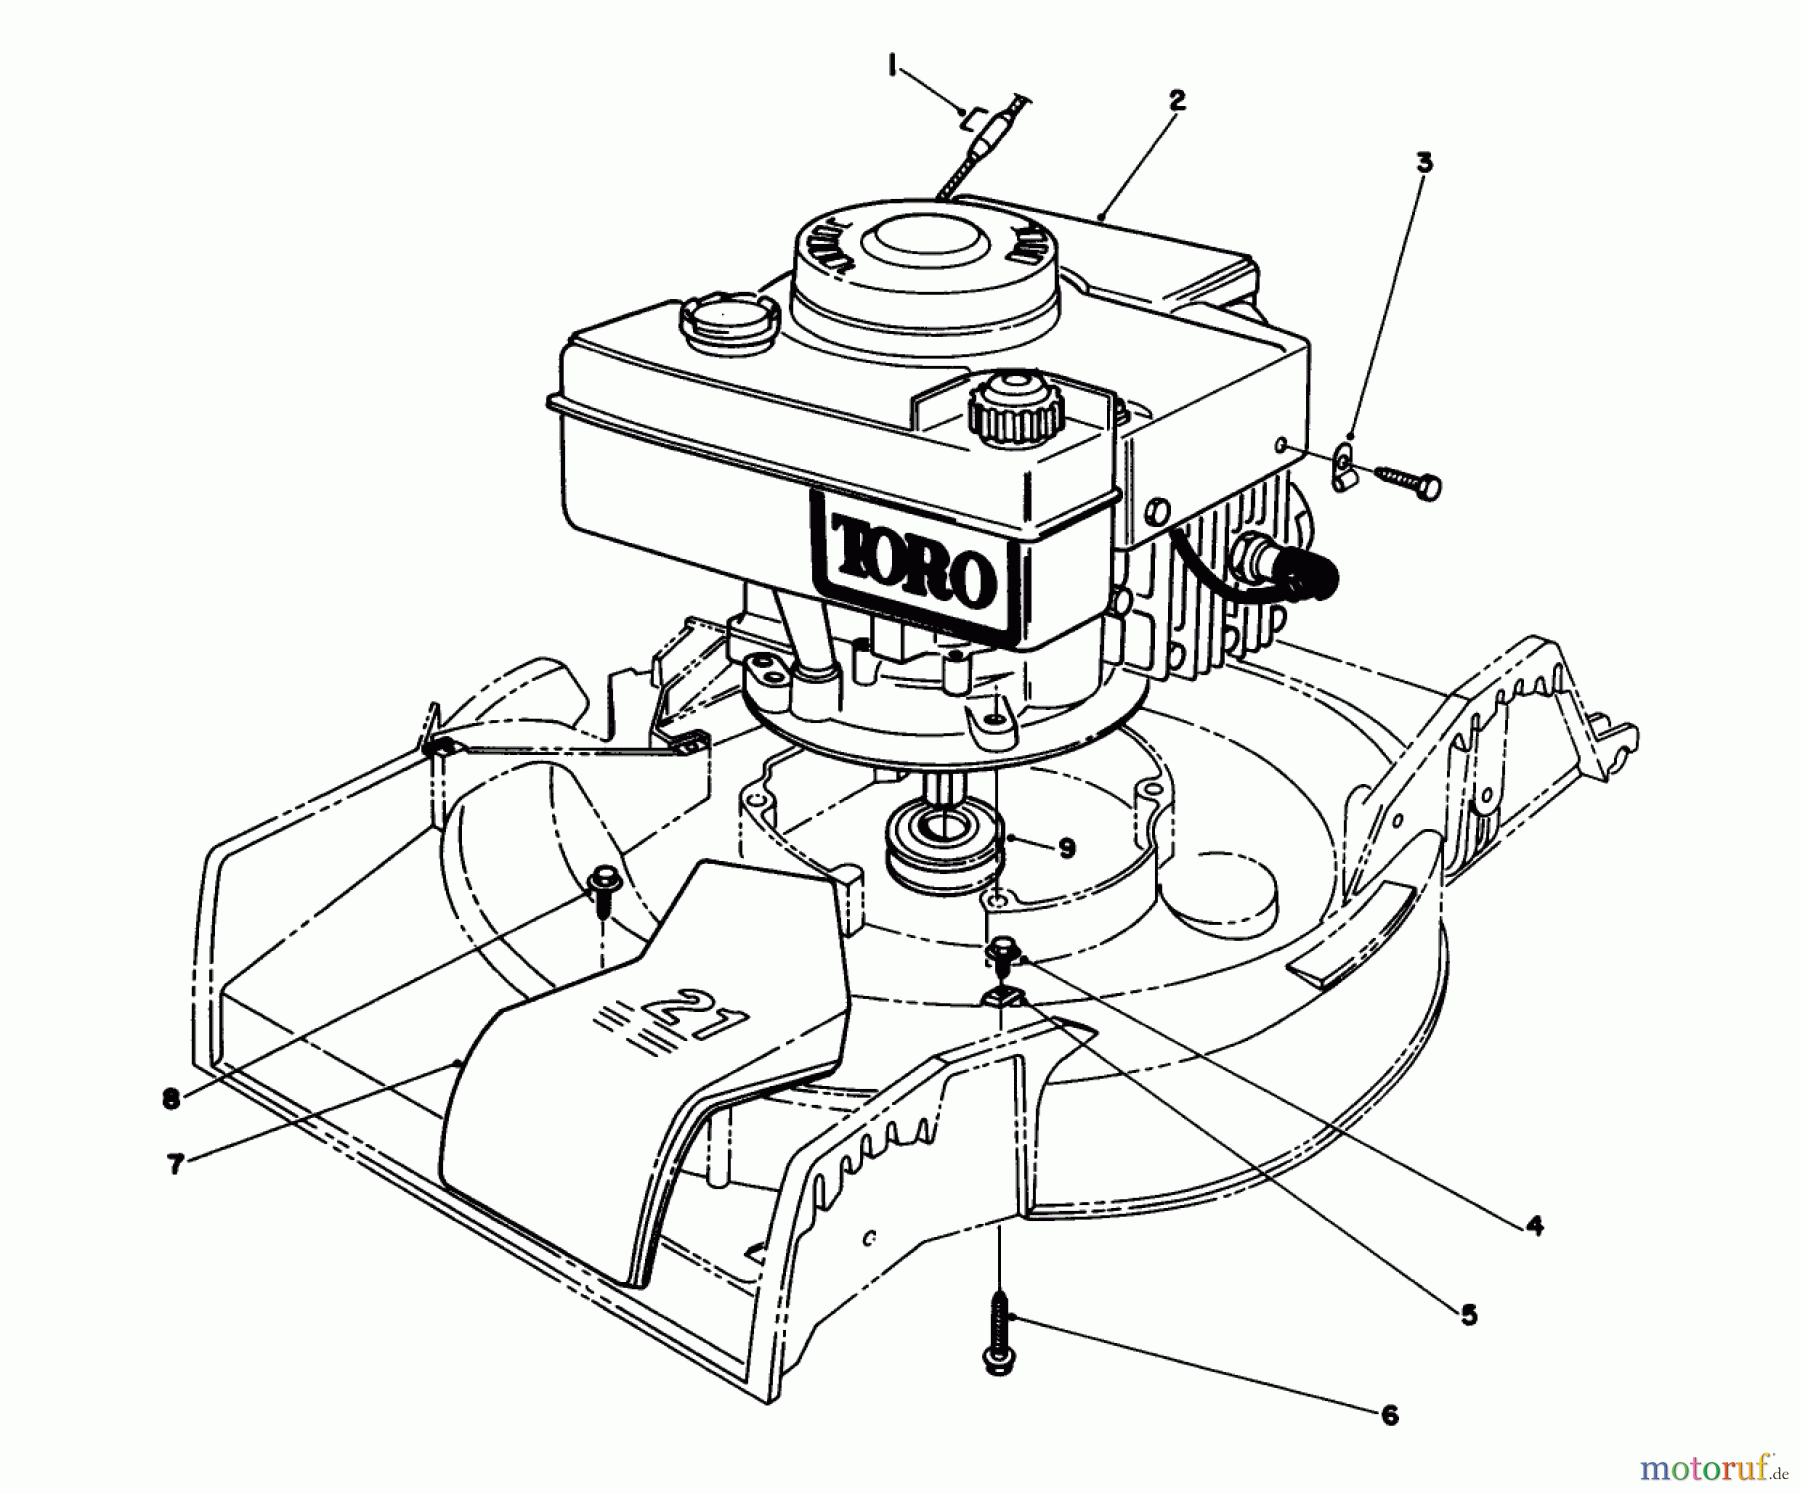  Toro Neu Mowers, Walk-Behind Seite 1 16775 - Toro Lawnmower, 1988 (8022966-8999999) ENGINE ASSEMBLY